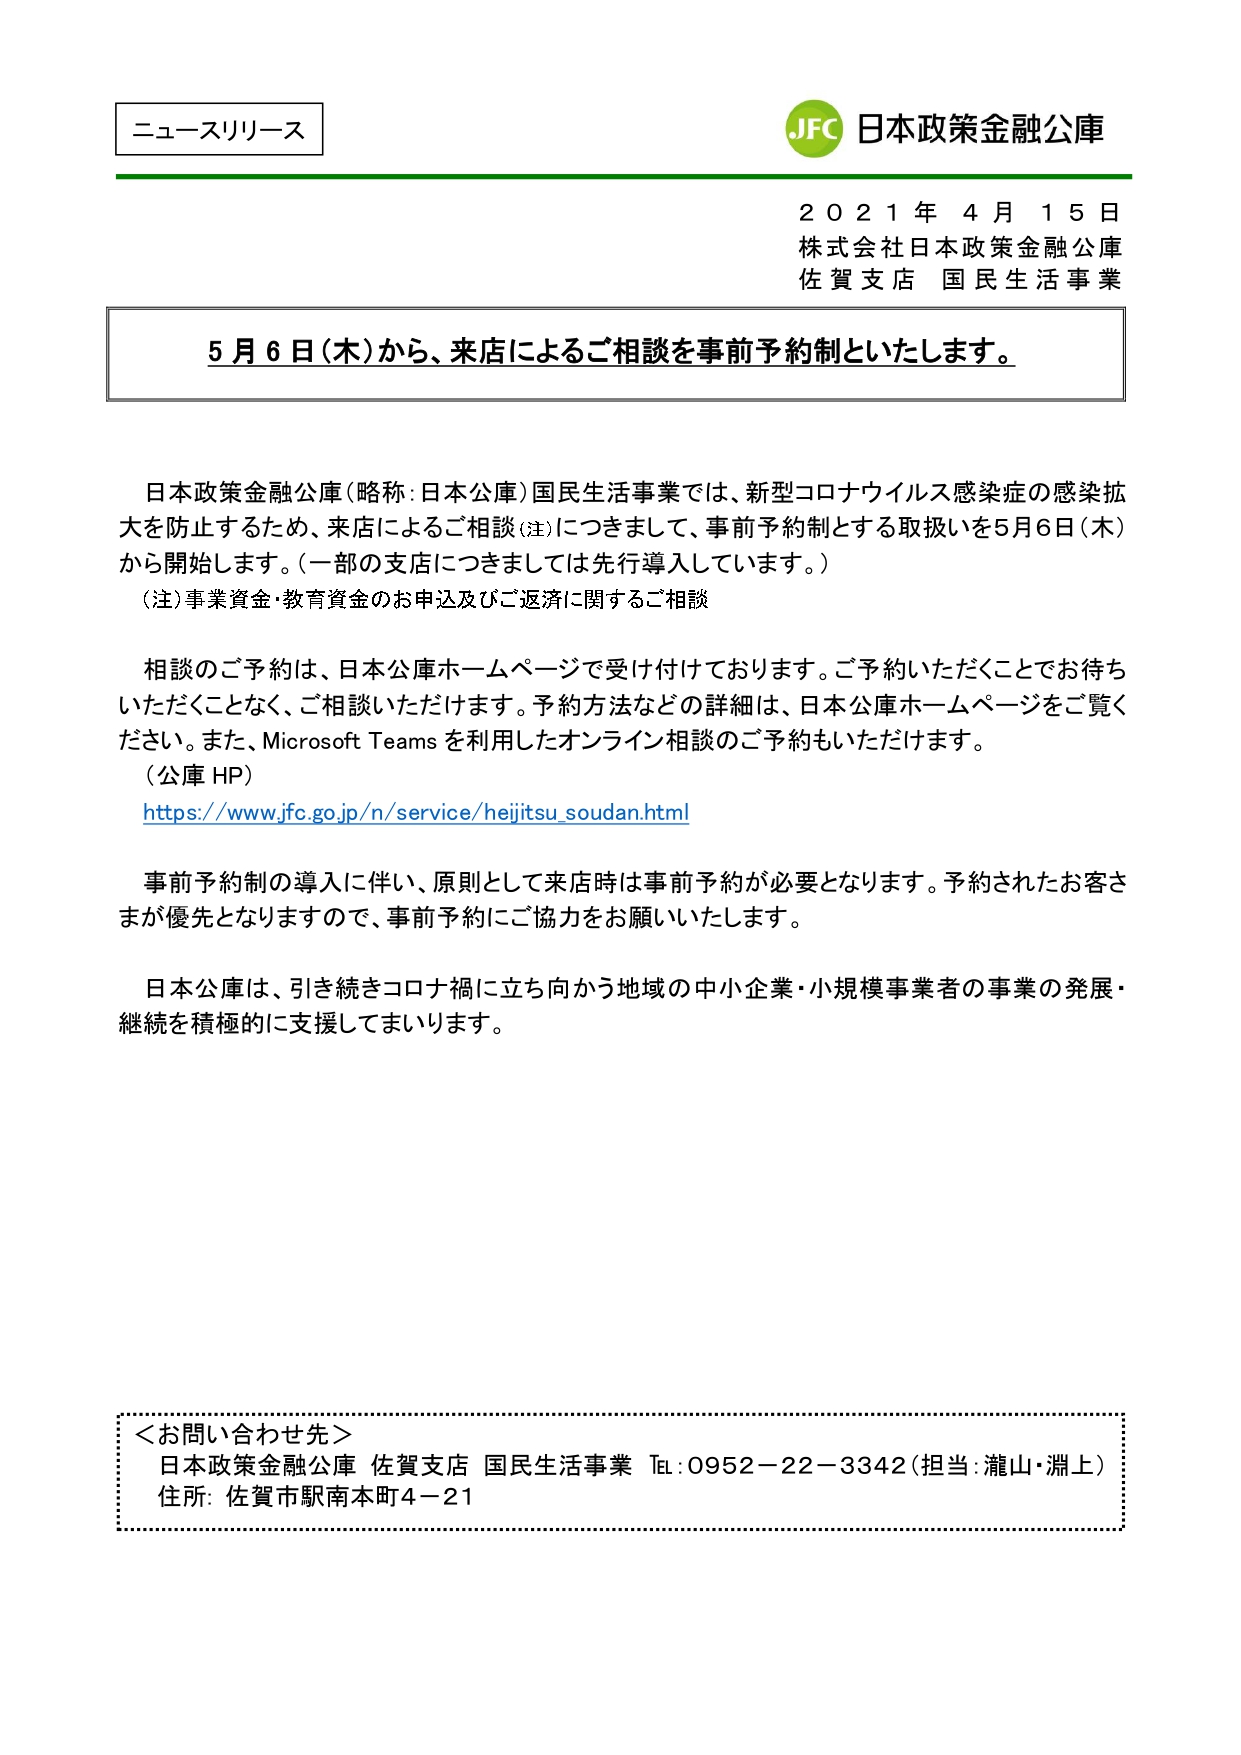 【お知らせ】日本公庫佐賀支店国民生活事業「相談窓口の事前予約制について」